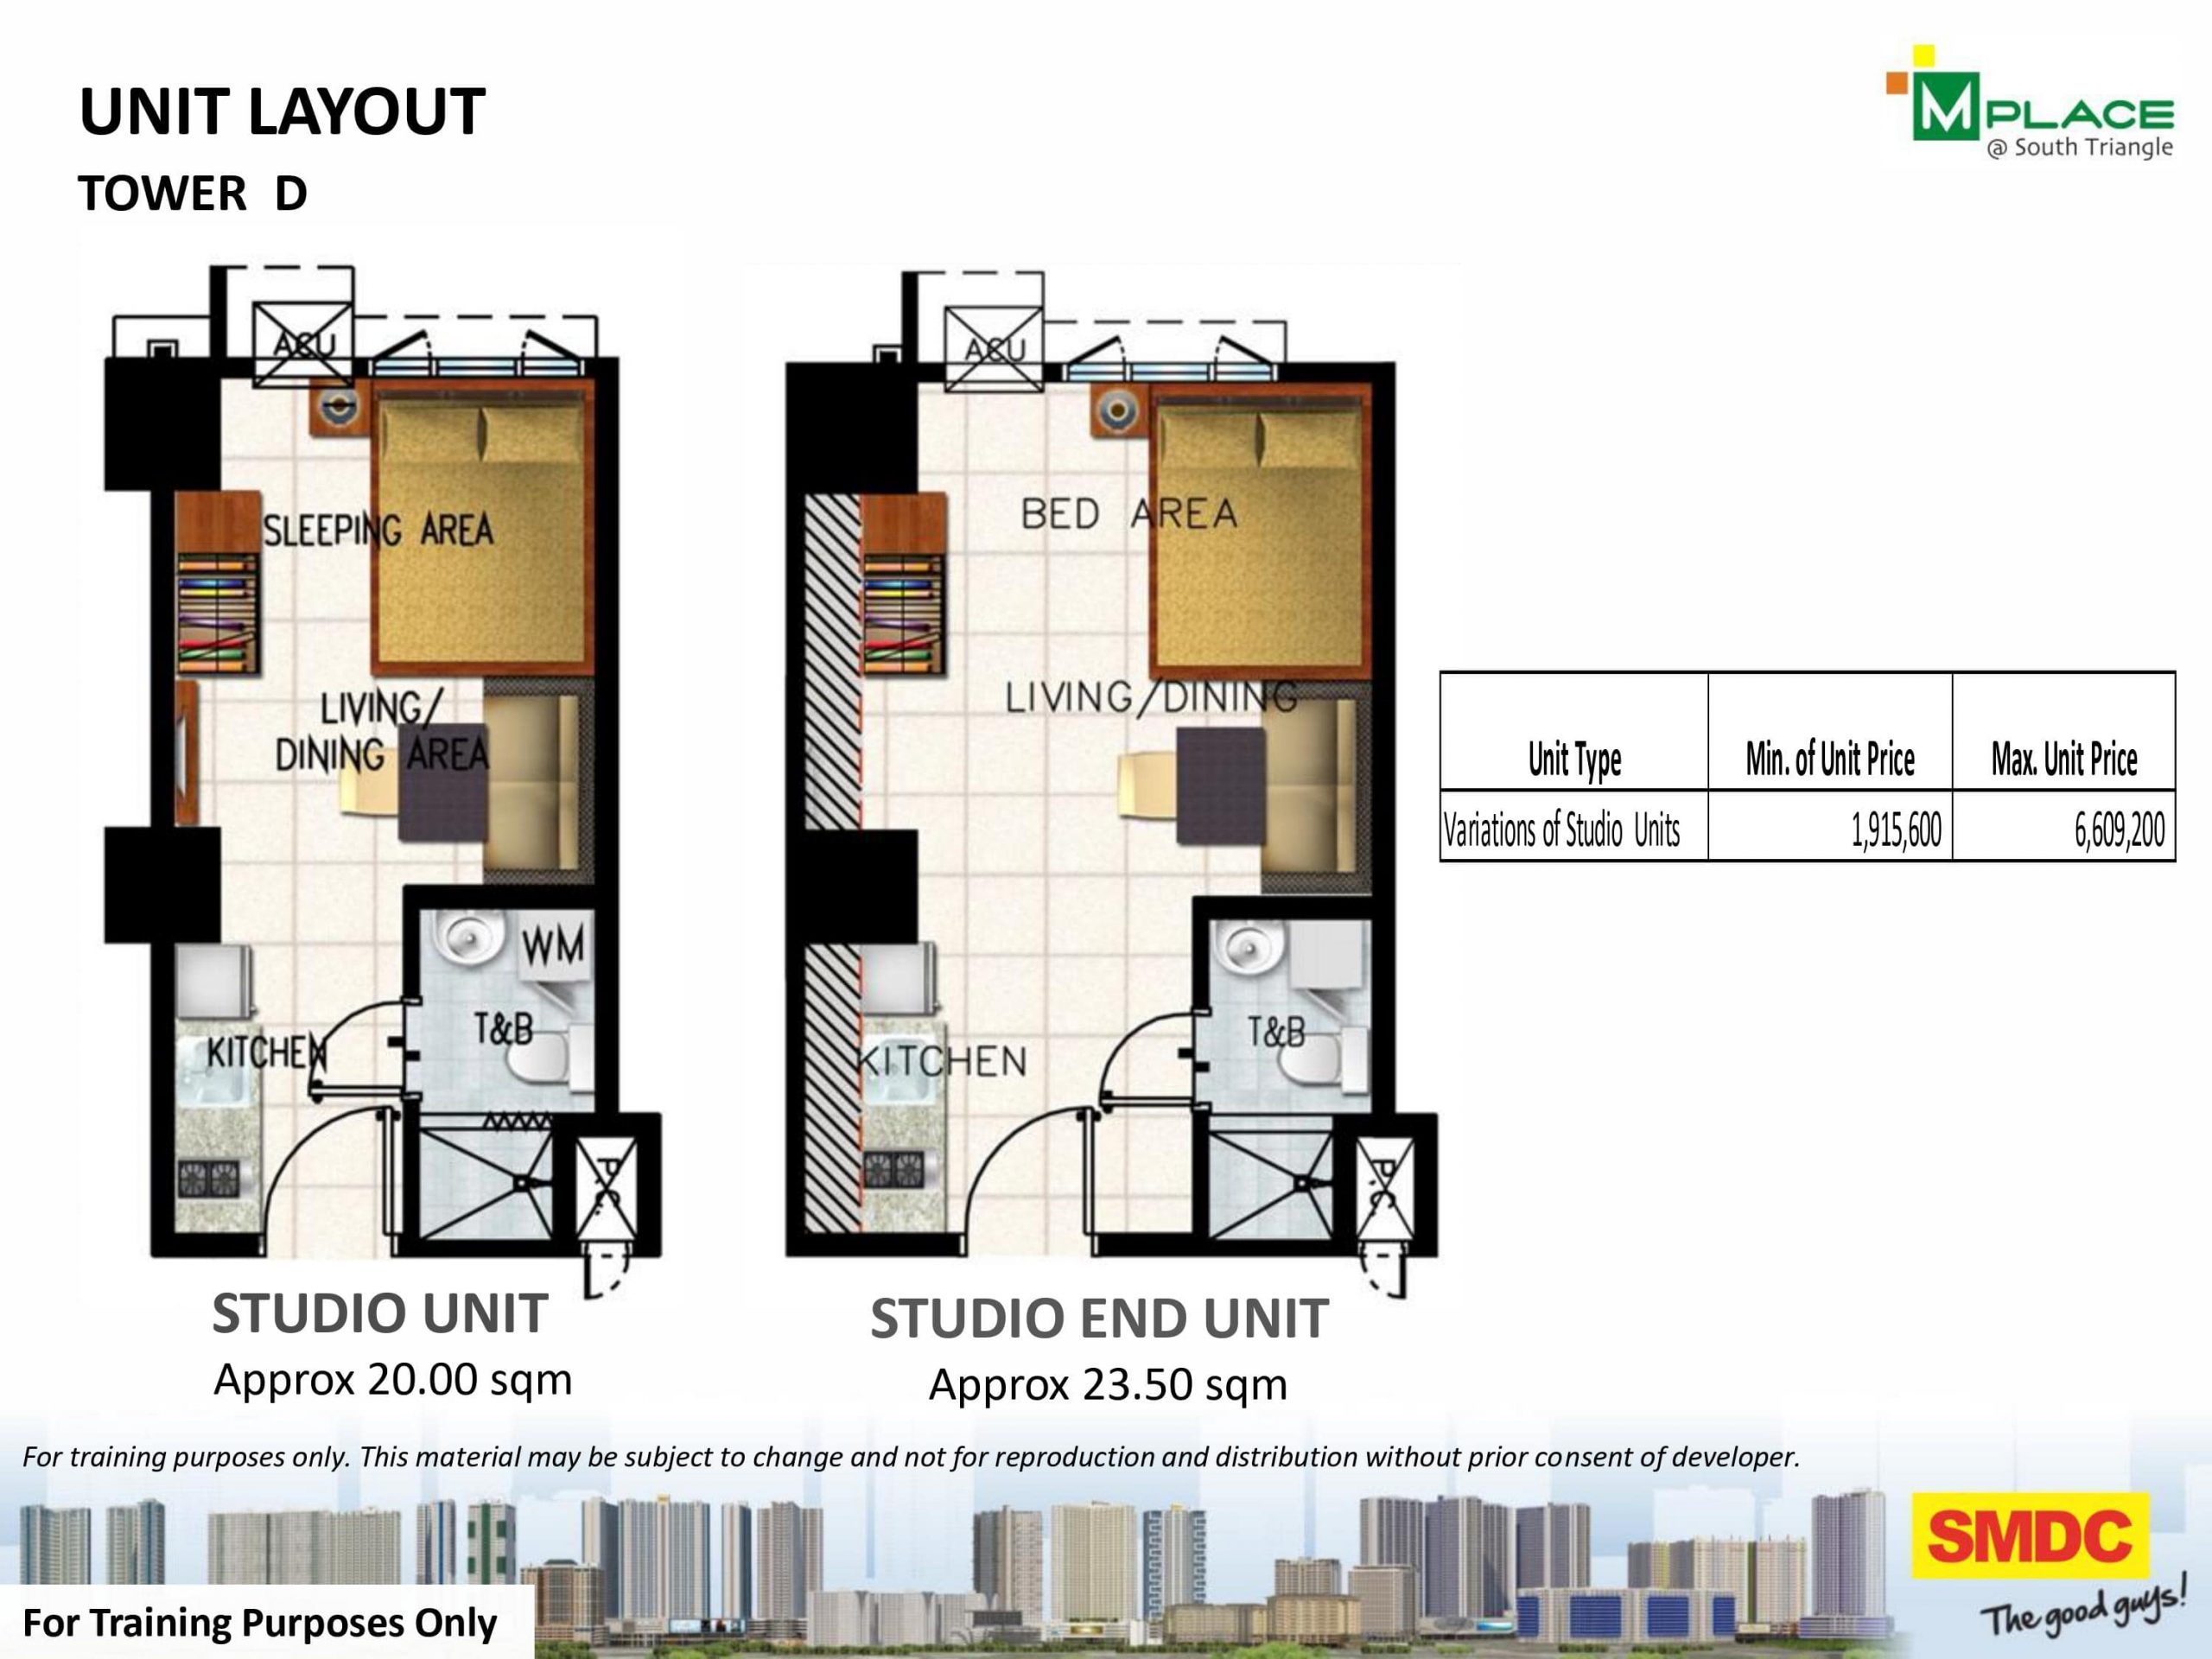 Tower D Studio & Studio End Unit